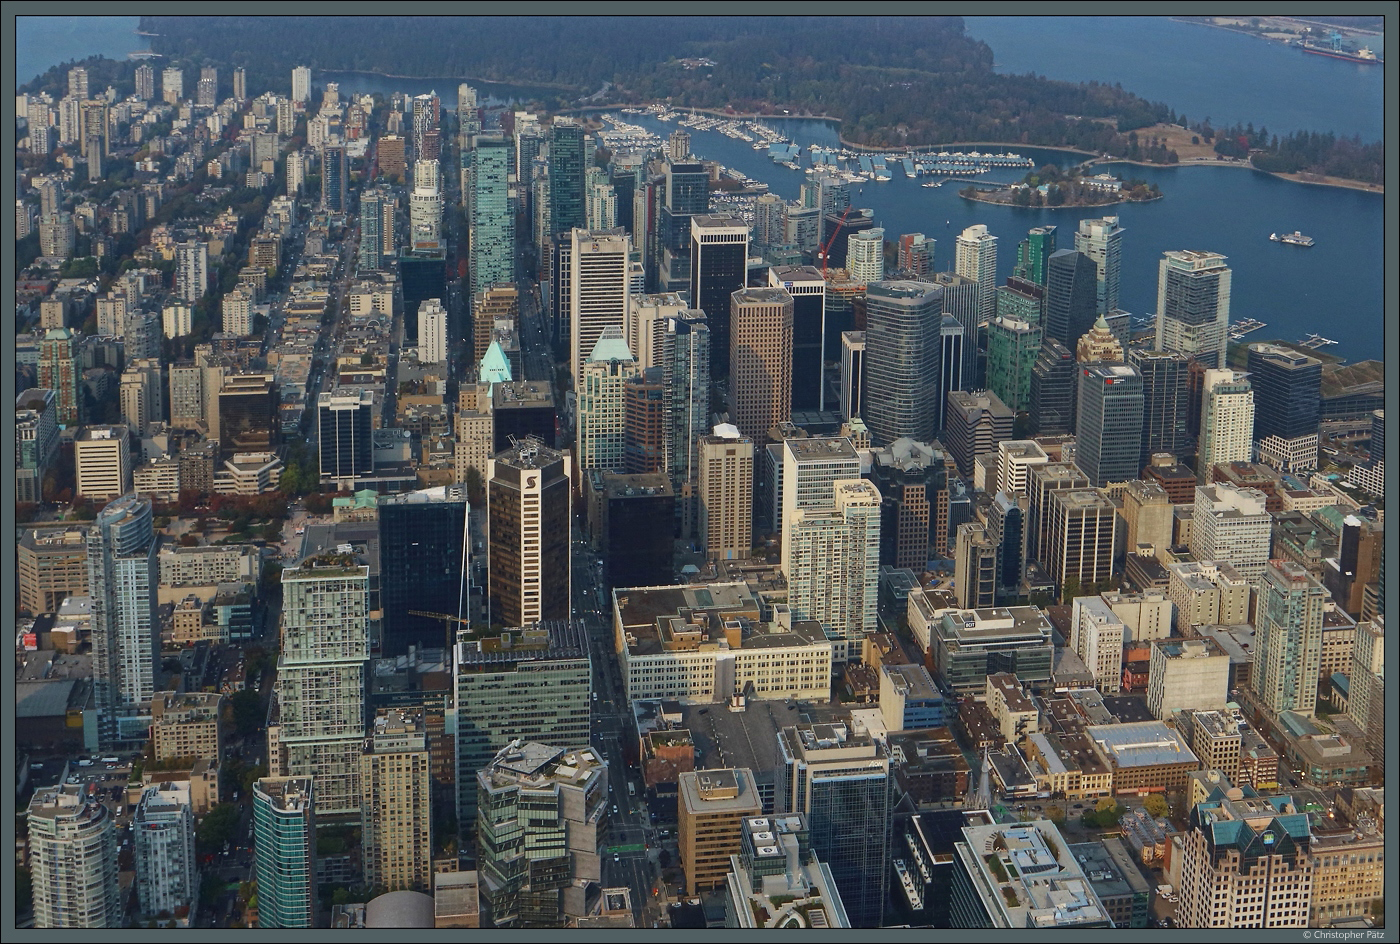 Blick aus dem Flugzeug auf die Downtown von Vancouver. Rechts befindet sich der Coal Harbour, am oberen Bildrand der Stanley Park. (17.10.2022)